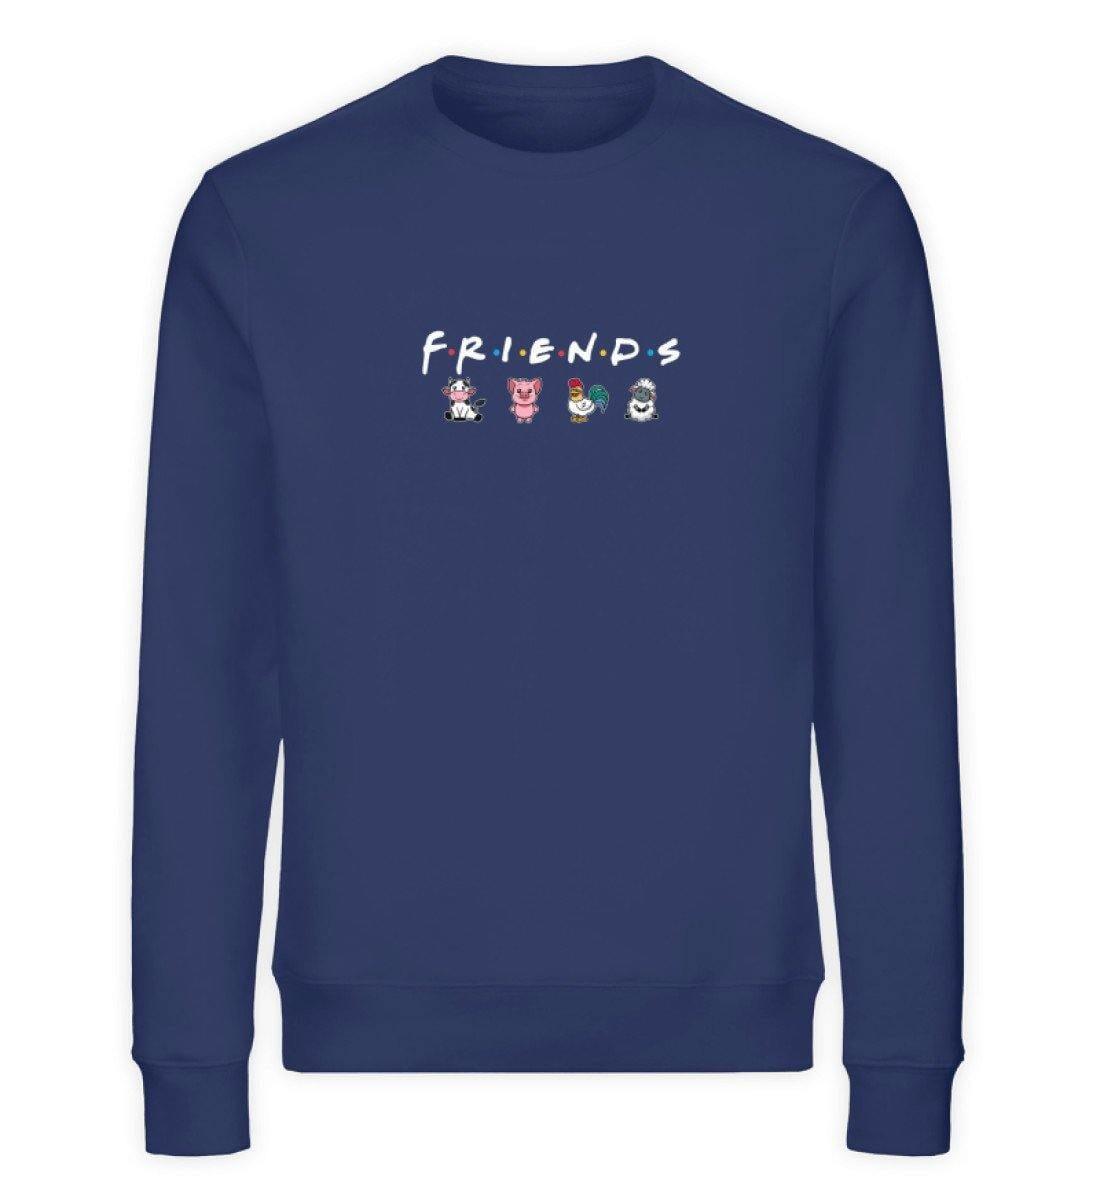 Friends - Unisex Organic Sweatshirt Changer Sweatshirt ST/ST Shirtee French Navy XS 